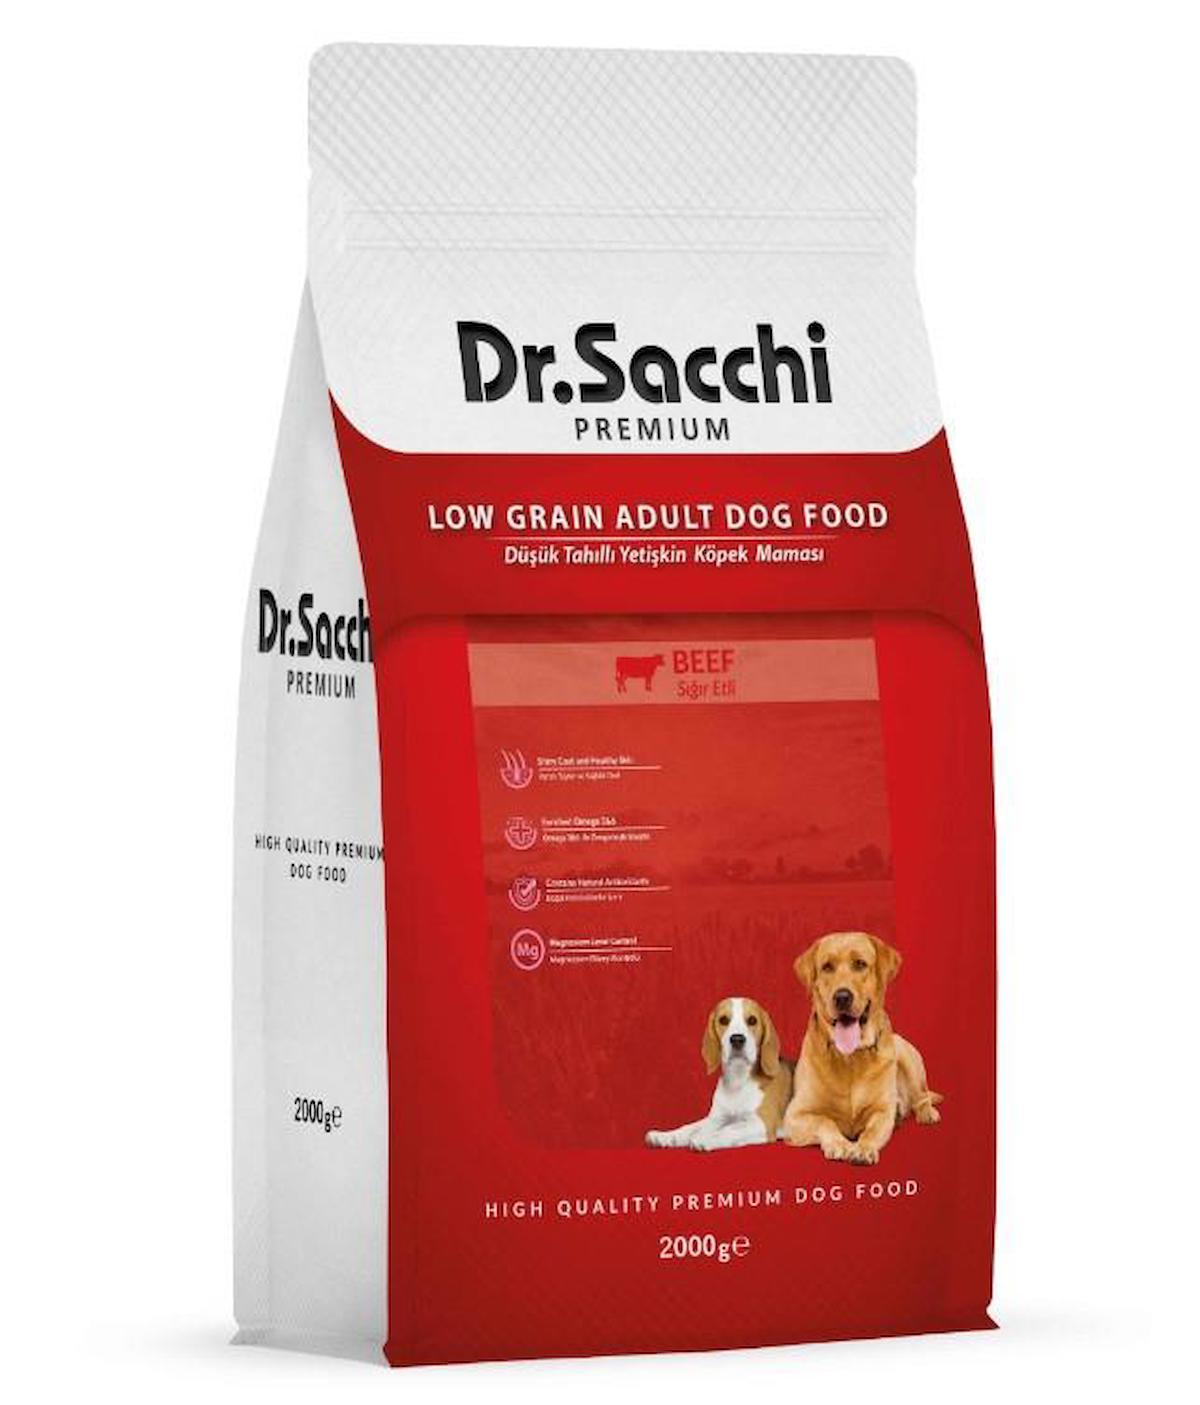 Dr.Sacchi Premium Sığır Etli Tüm Irklar Yetişkin Kuru Köpek Maması 2 kg